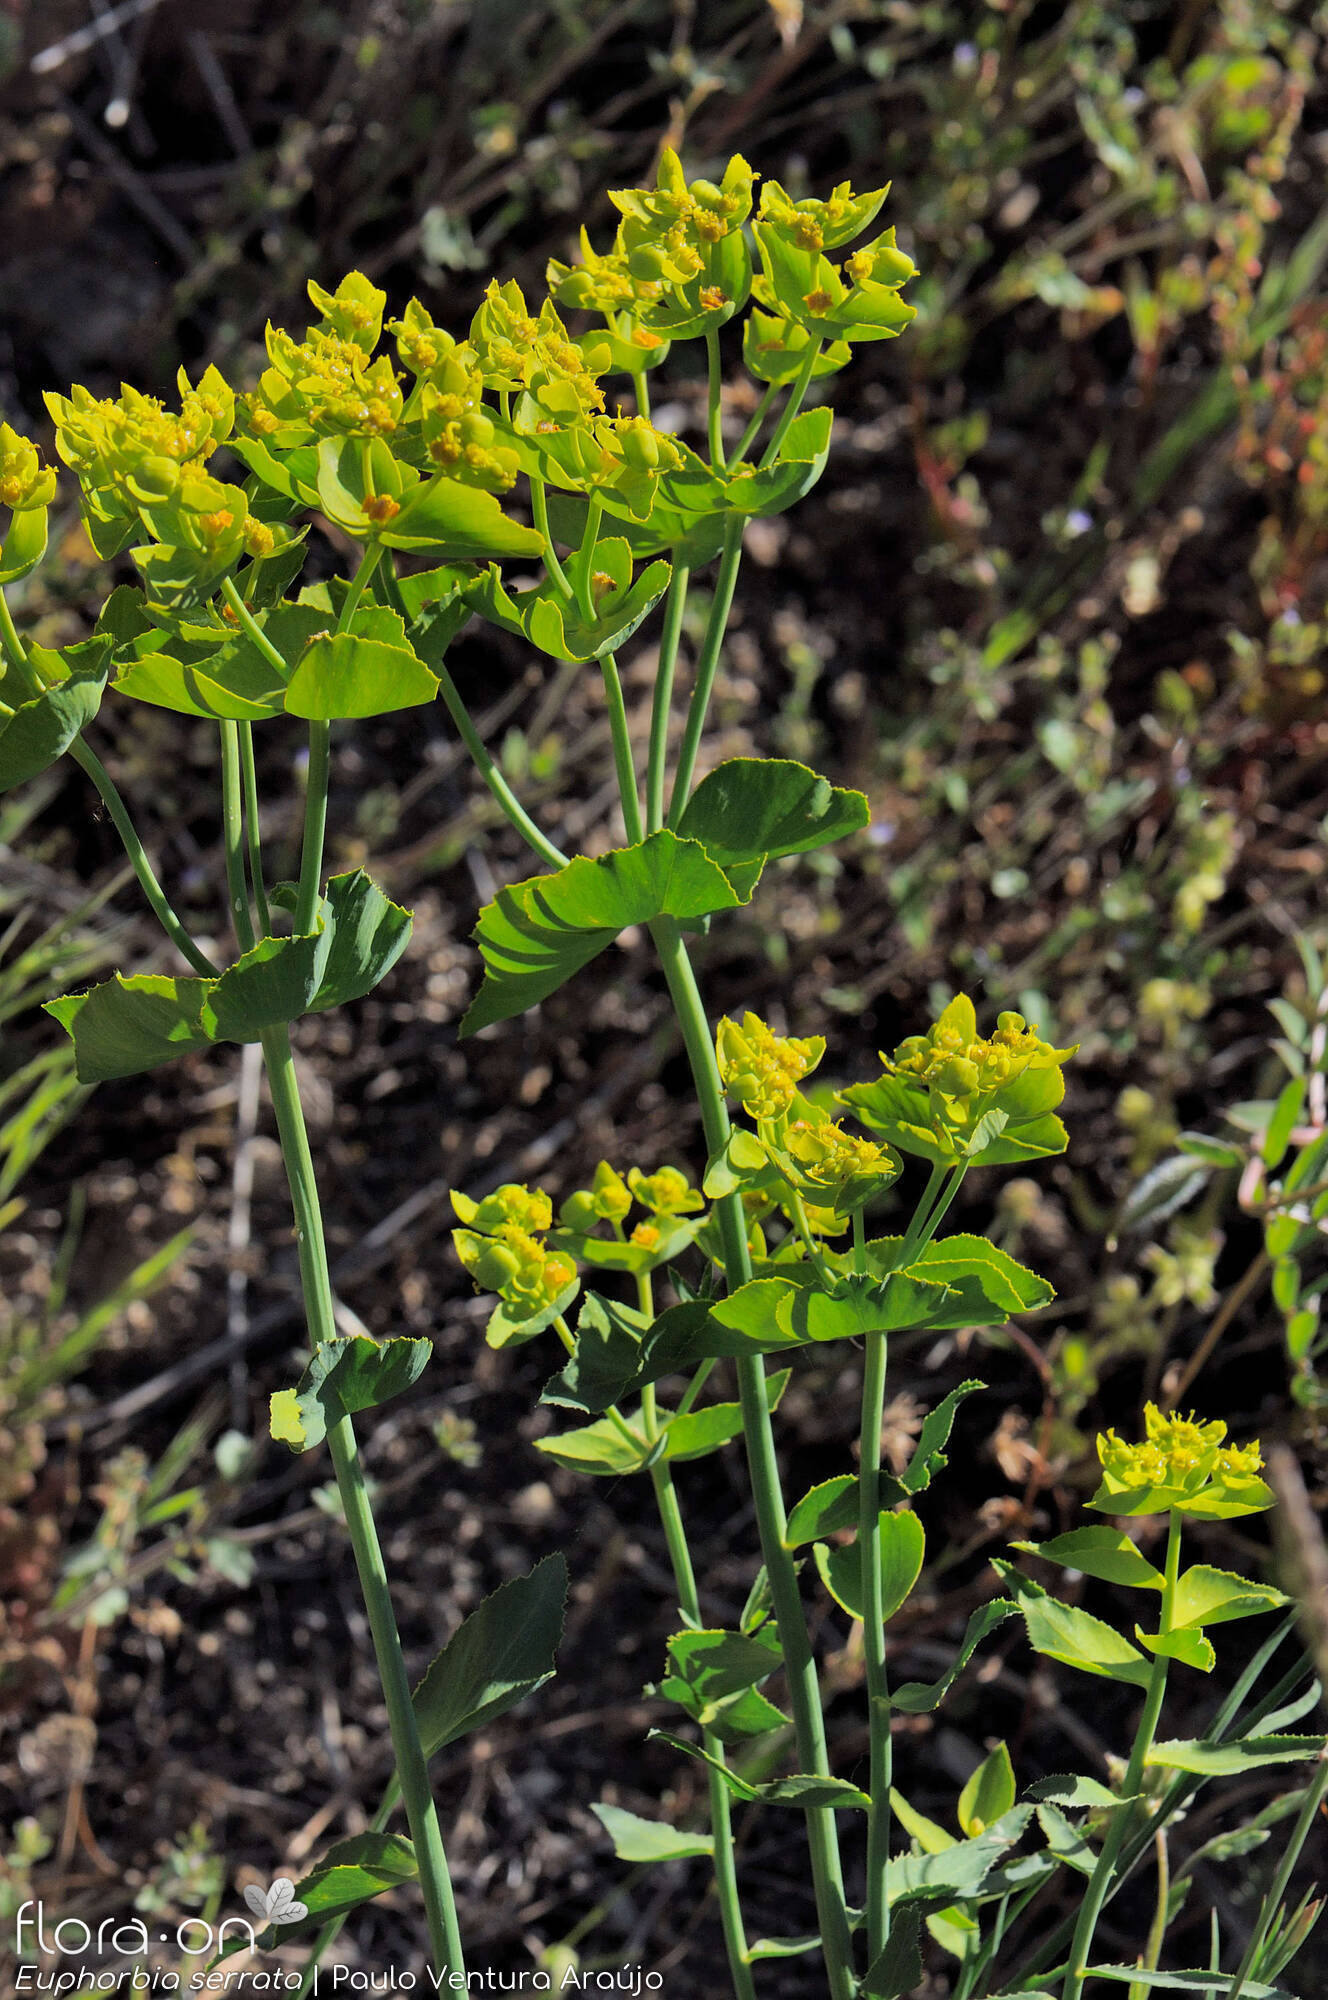 Euphorbia serrata - Hábito | Paulo Ventura Araújo; CC BY-NC 4.0